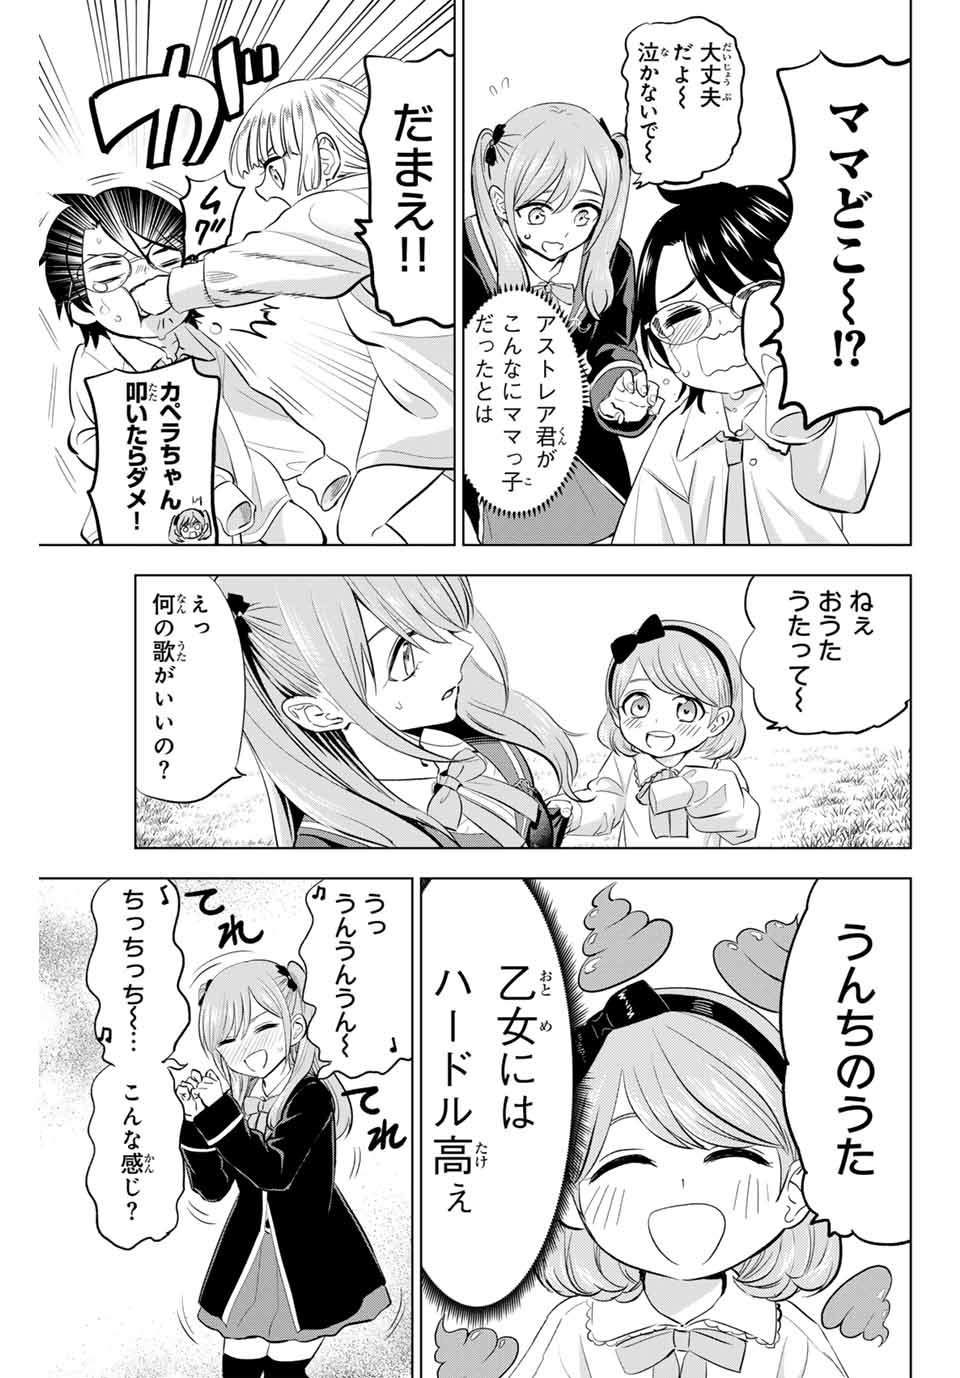 Kuroneko to Majo no Kyoushitsu - Chapter 63 - Page 3